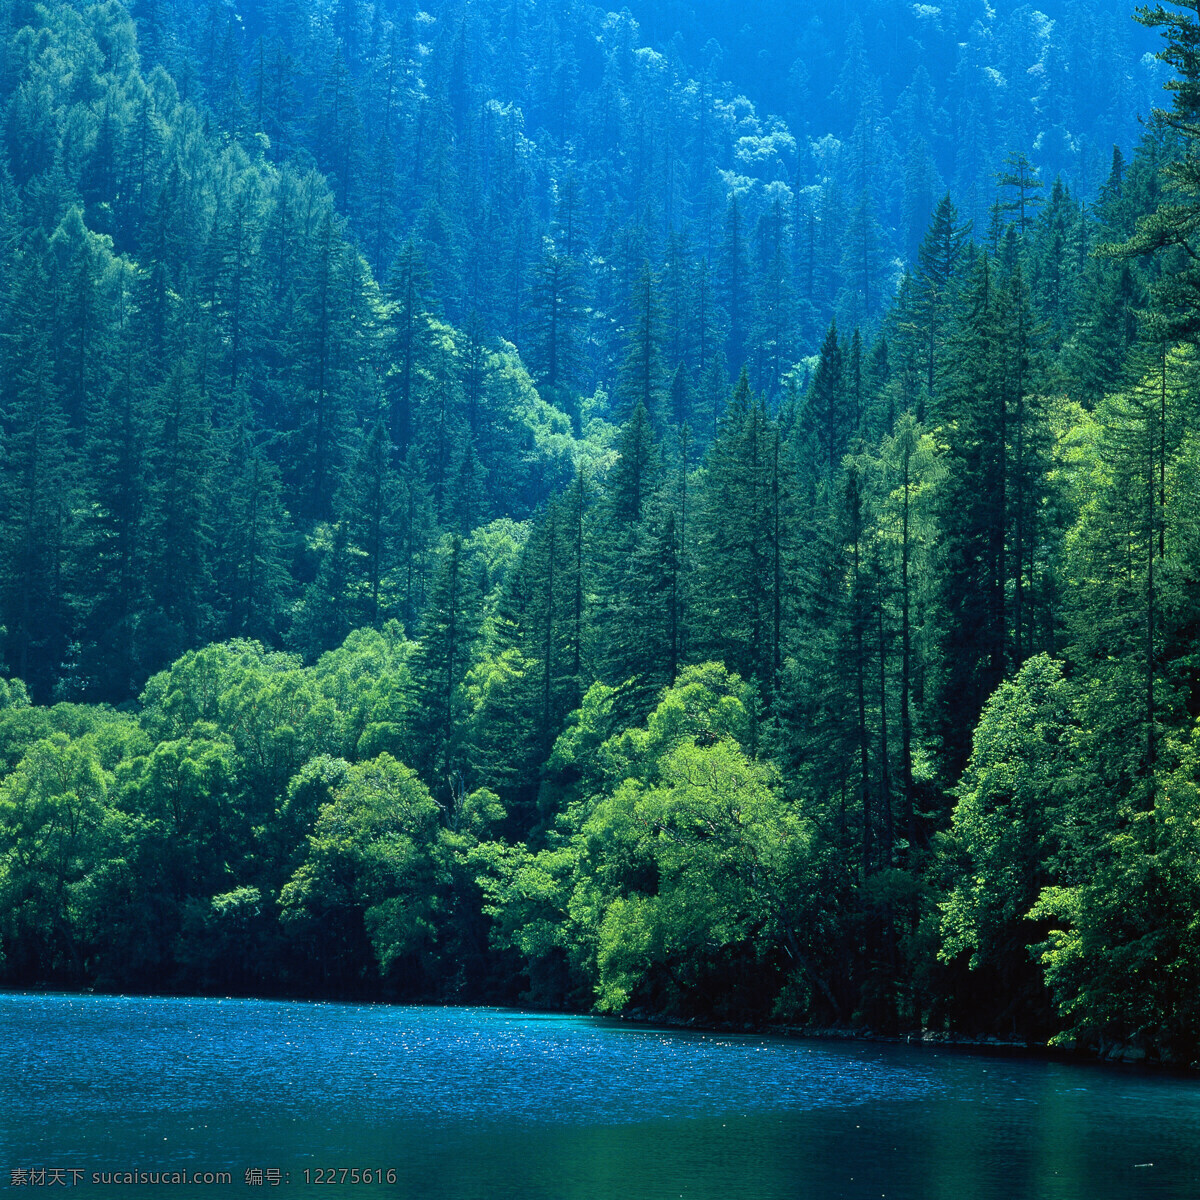 高山上的森林 蓝天的风景 高山 山地 森林 森林高山 高山森林 蓝天 风景 蓝天白云 蓝天风景 白云 白云蓝天 蓝天白云风景 风景图 大图 图 枫叶林 枫叶 蓝天下的景色 素材图片 图片的素材 素材的图片 照片 自然景观 自然风景